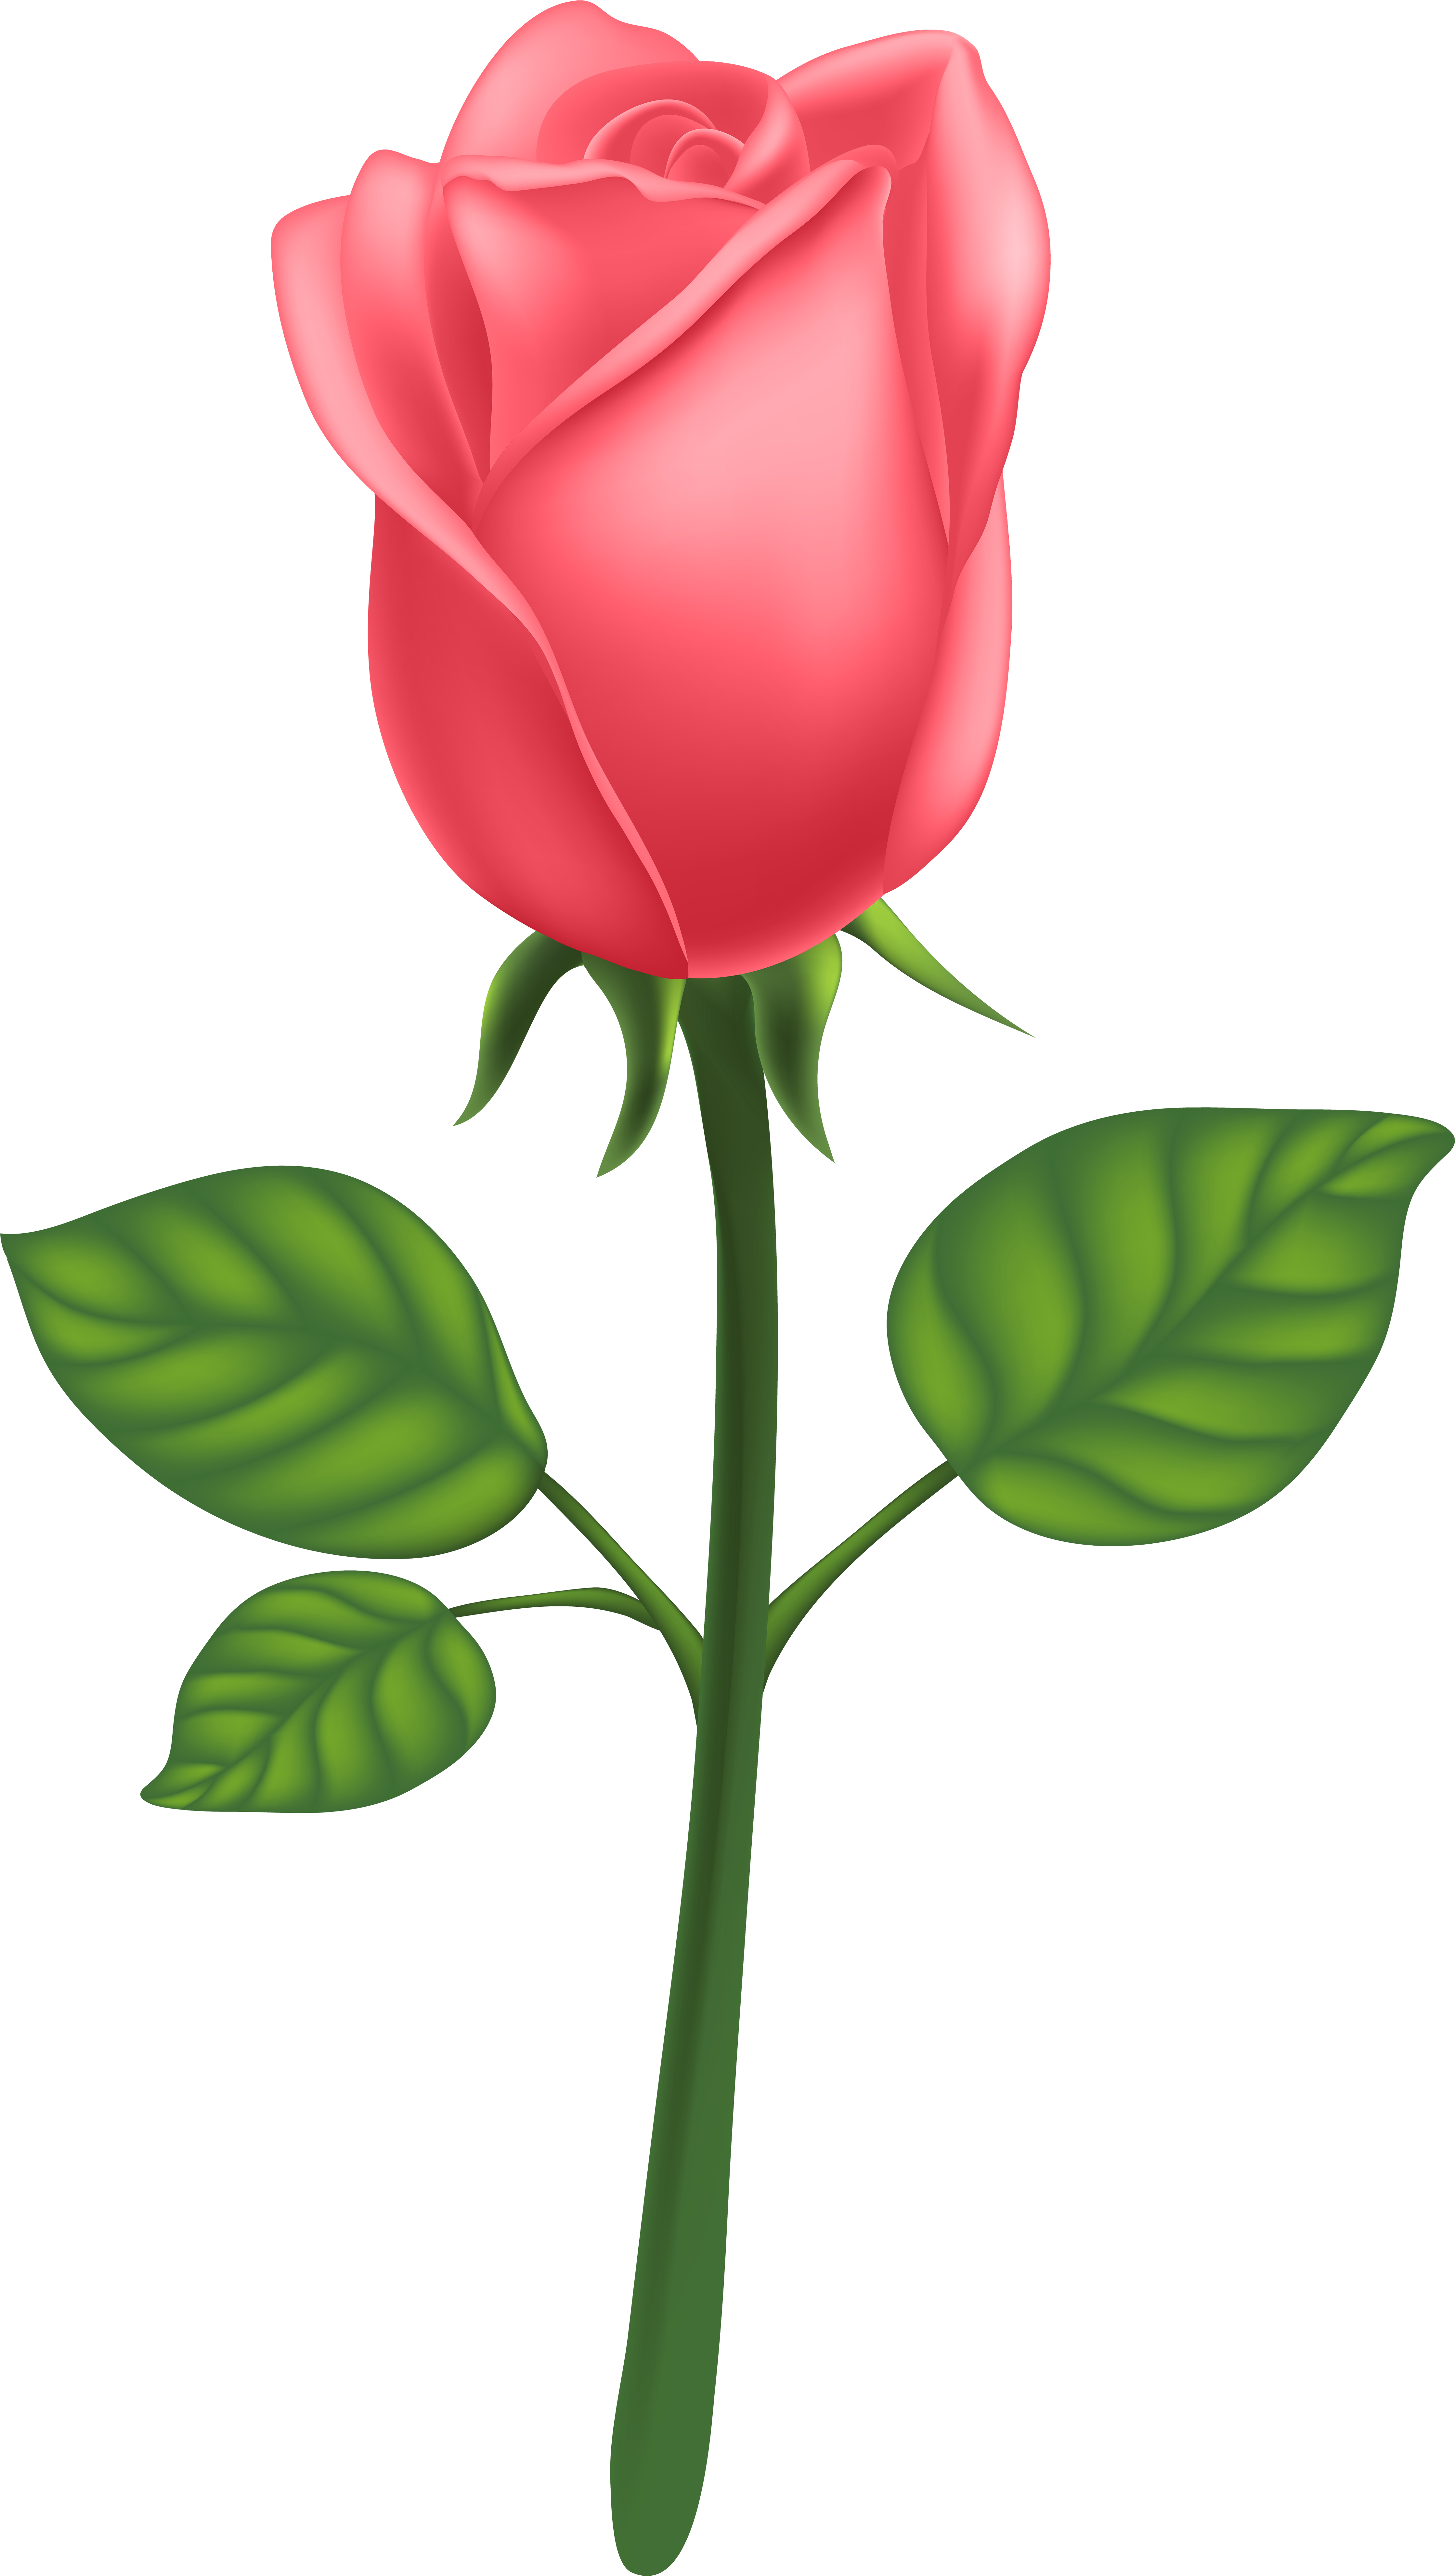 Garden Roses Centifolia Roses Petal Leaf Clip Art - Garden Roses Centifolia Roses Petal Leaf Clip Art (4546x8000)